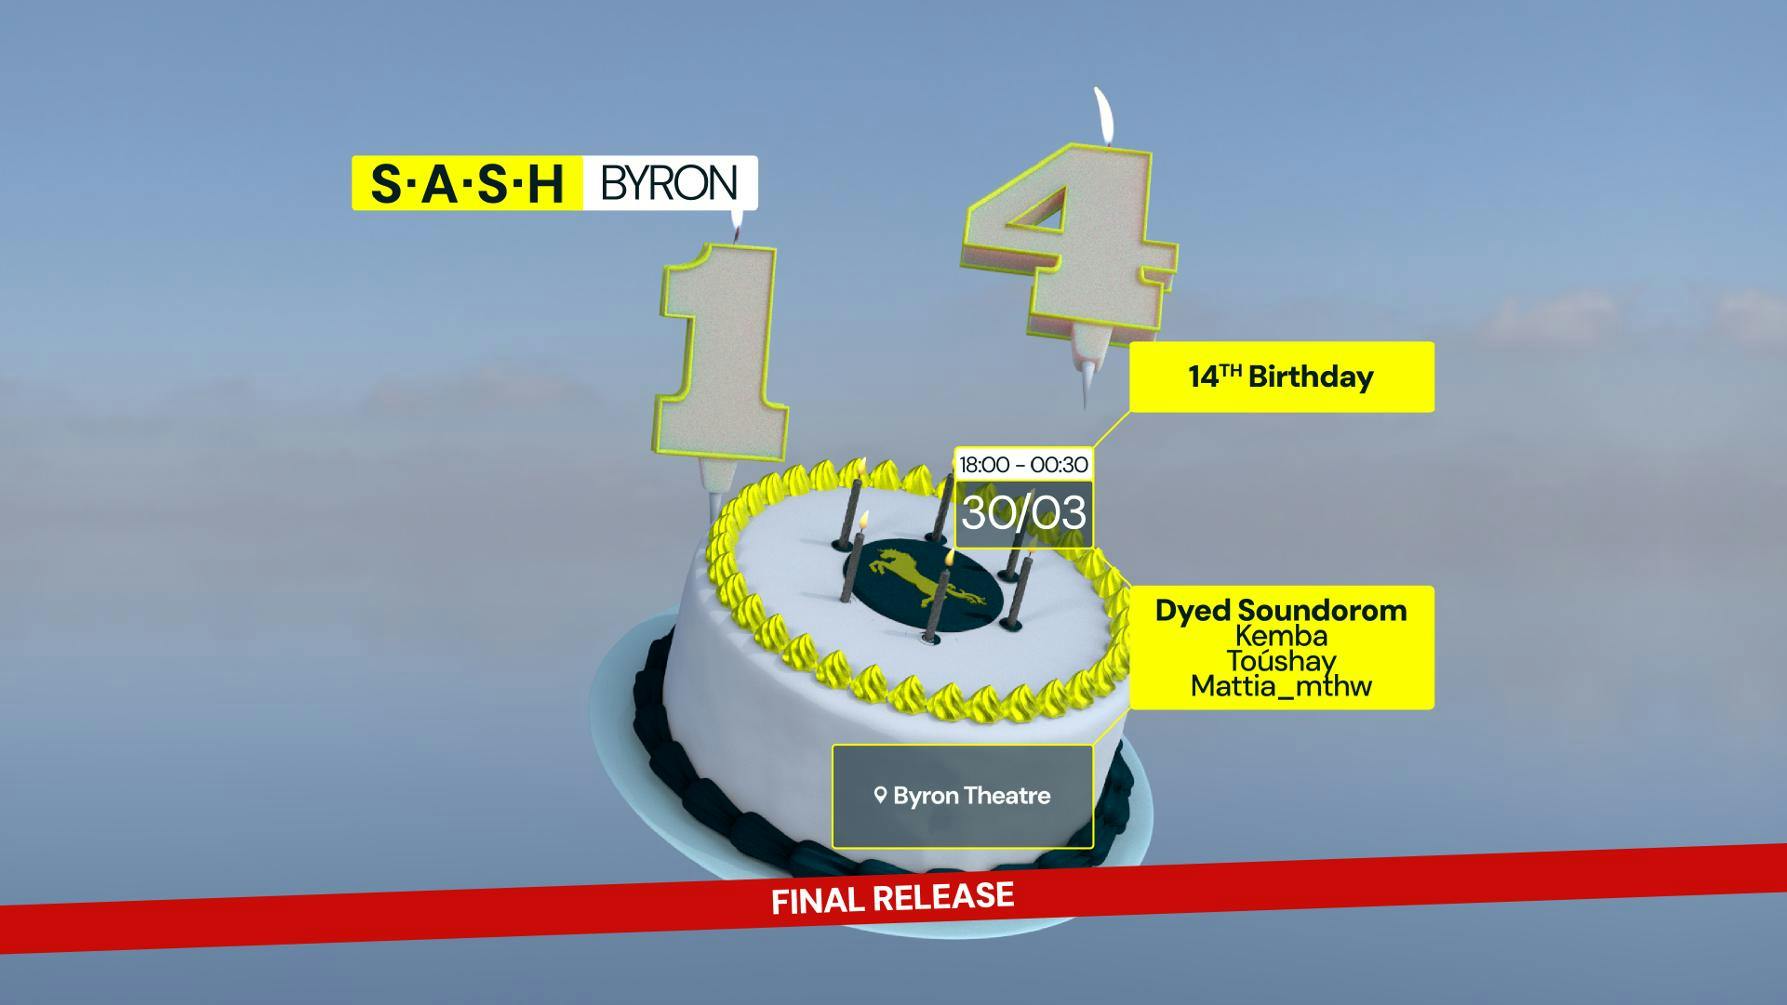 ★ S.A.S.H Byron Bay 14th Birthday ★ Dyed Soundorom ★ Saturday 30th March ★